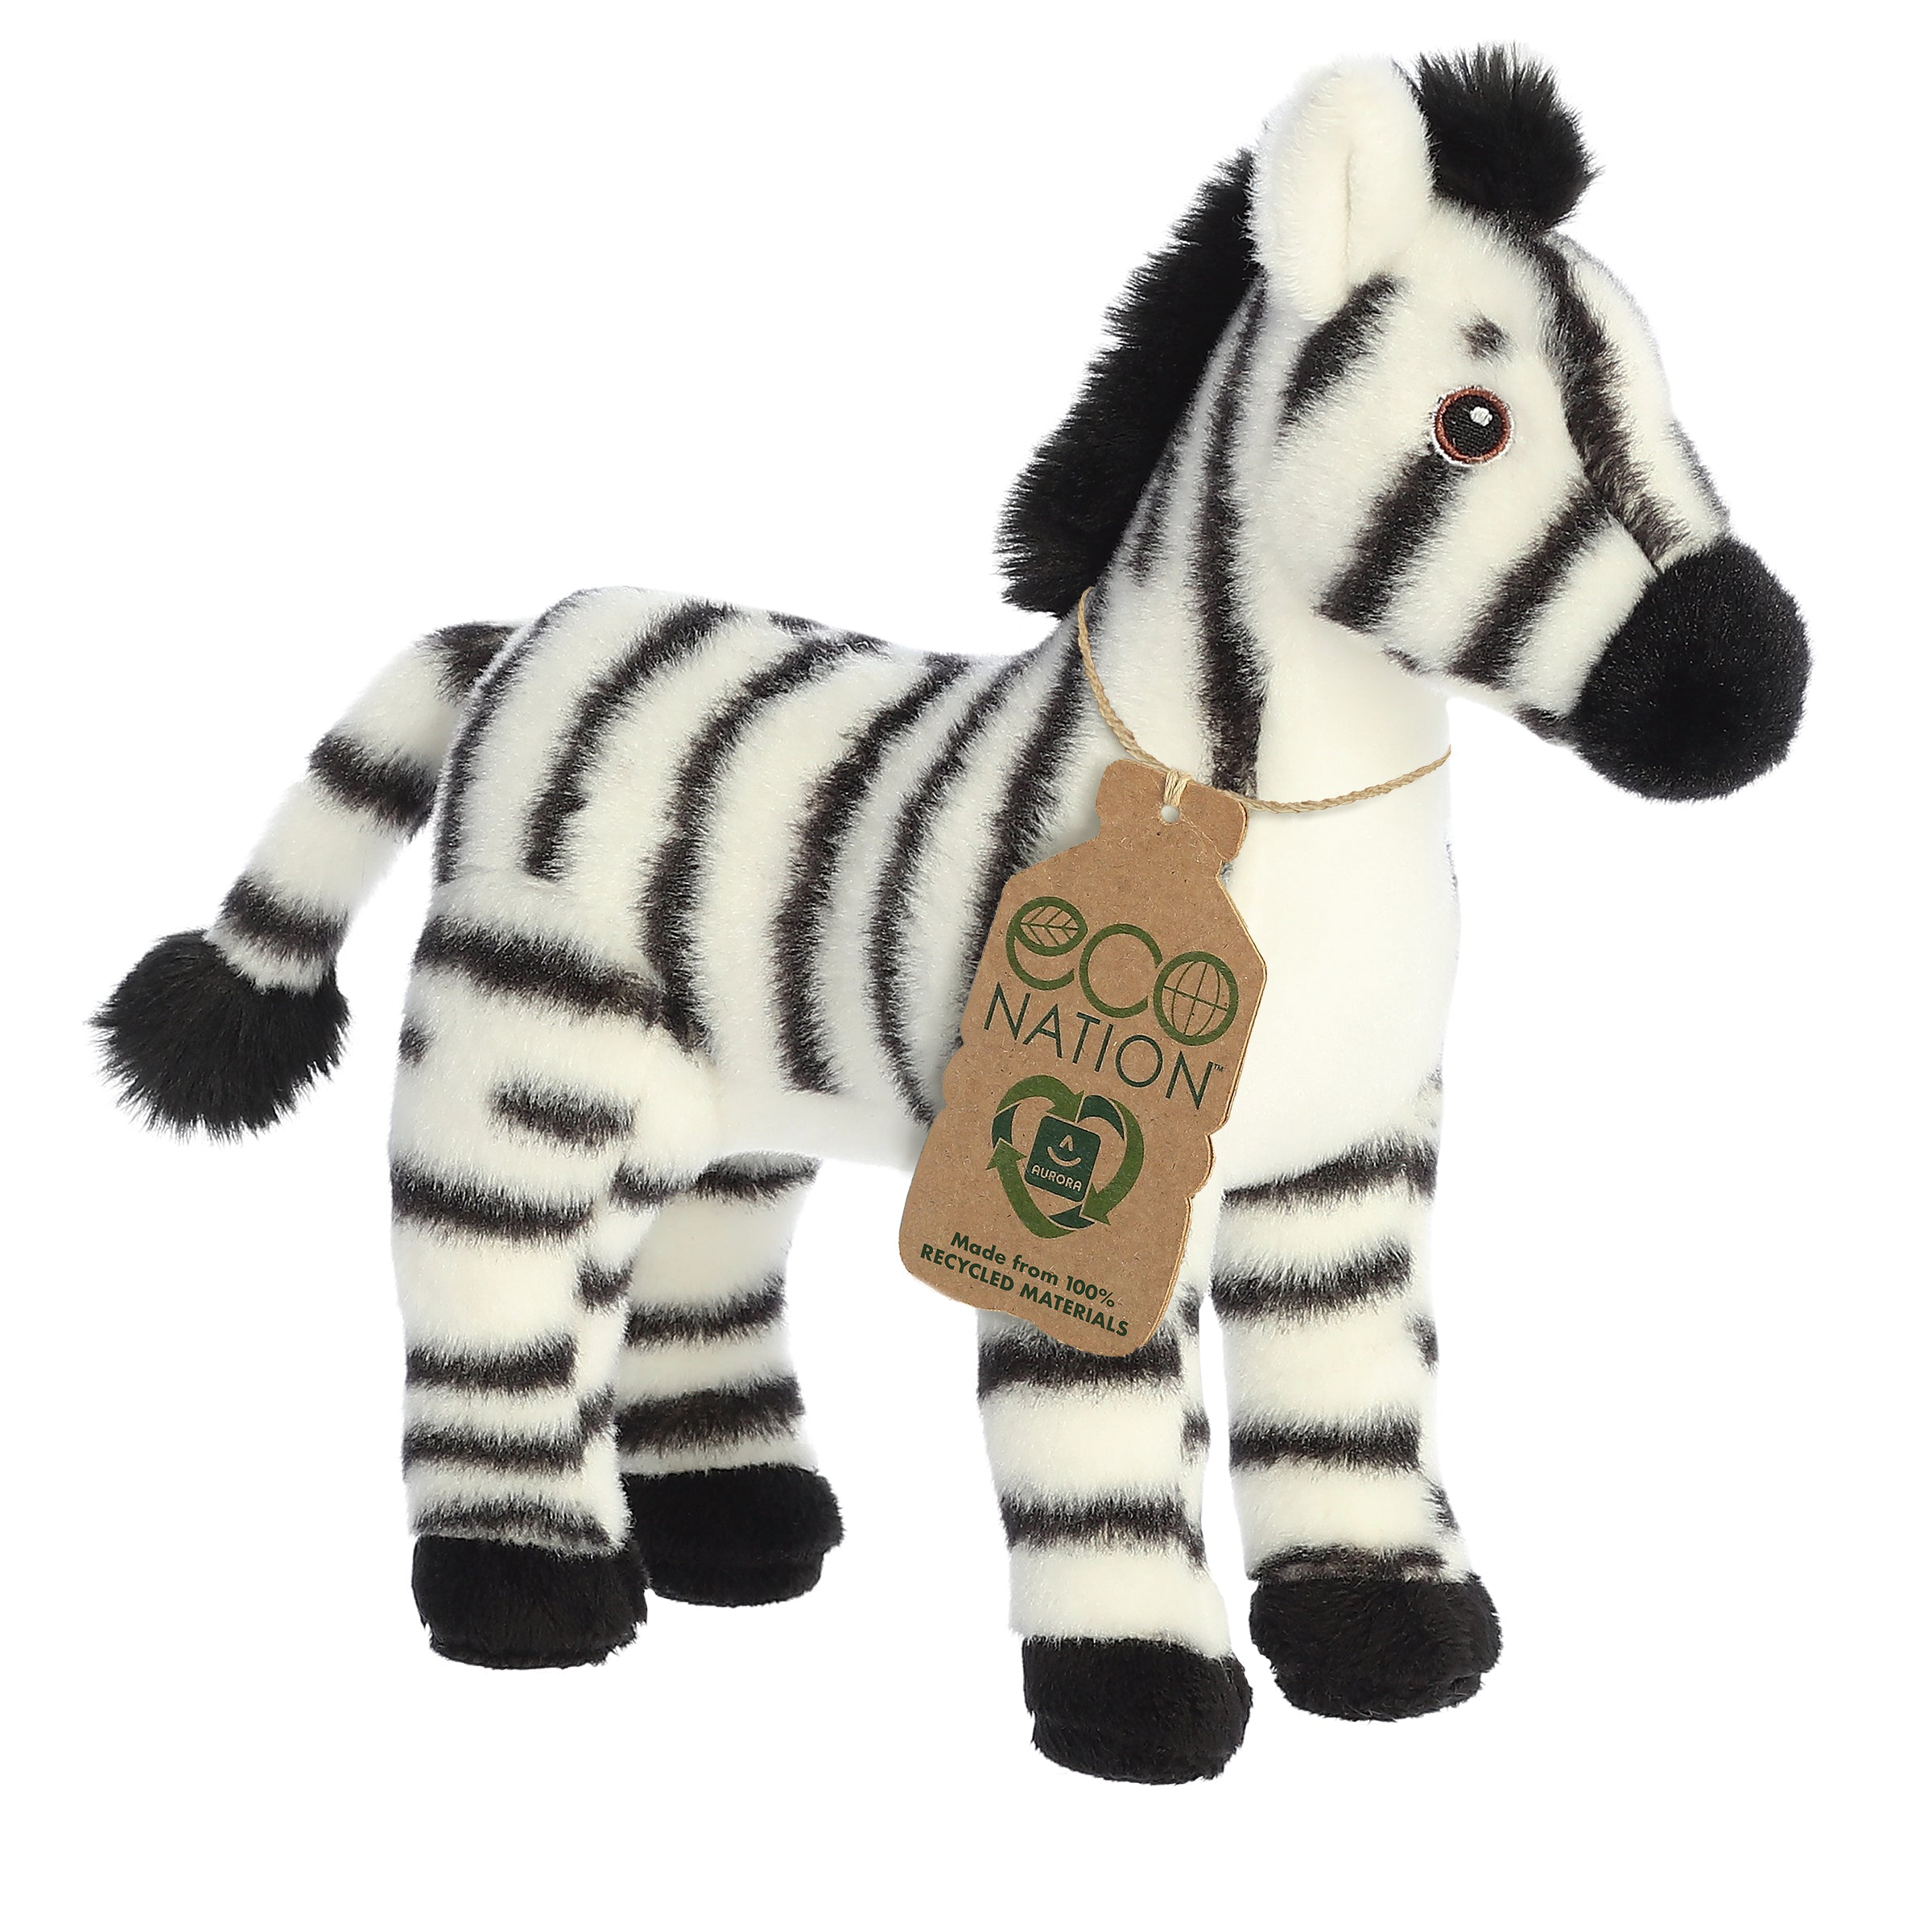 Wild - Ty Beanie Boos Zebra Stuffed Animal